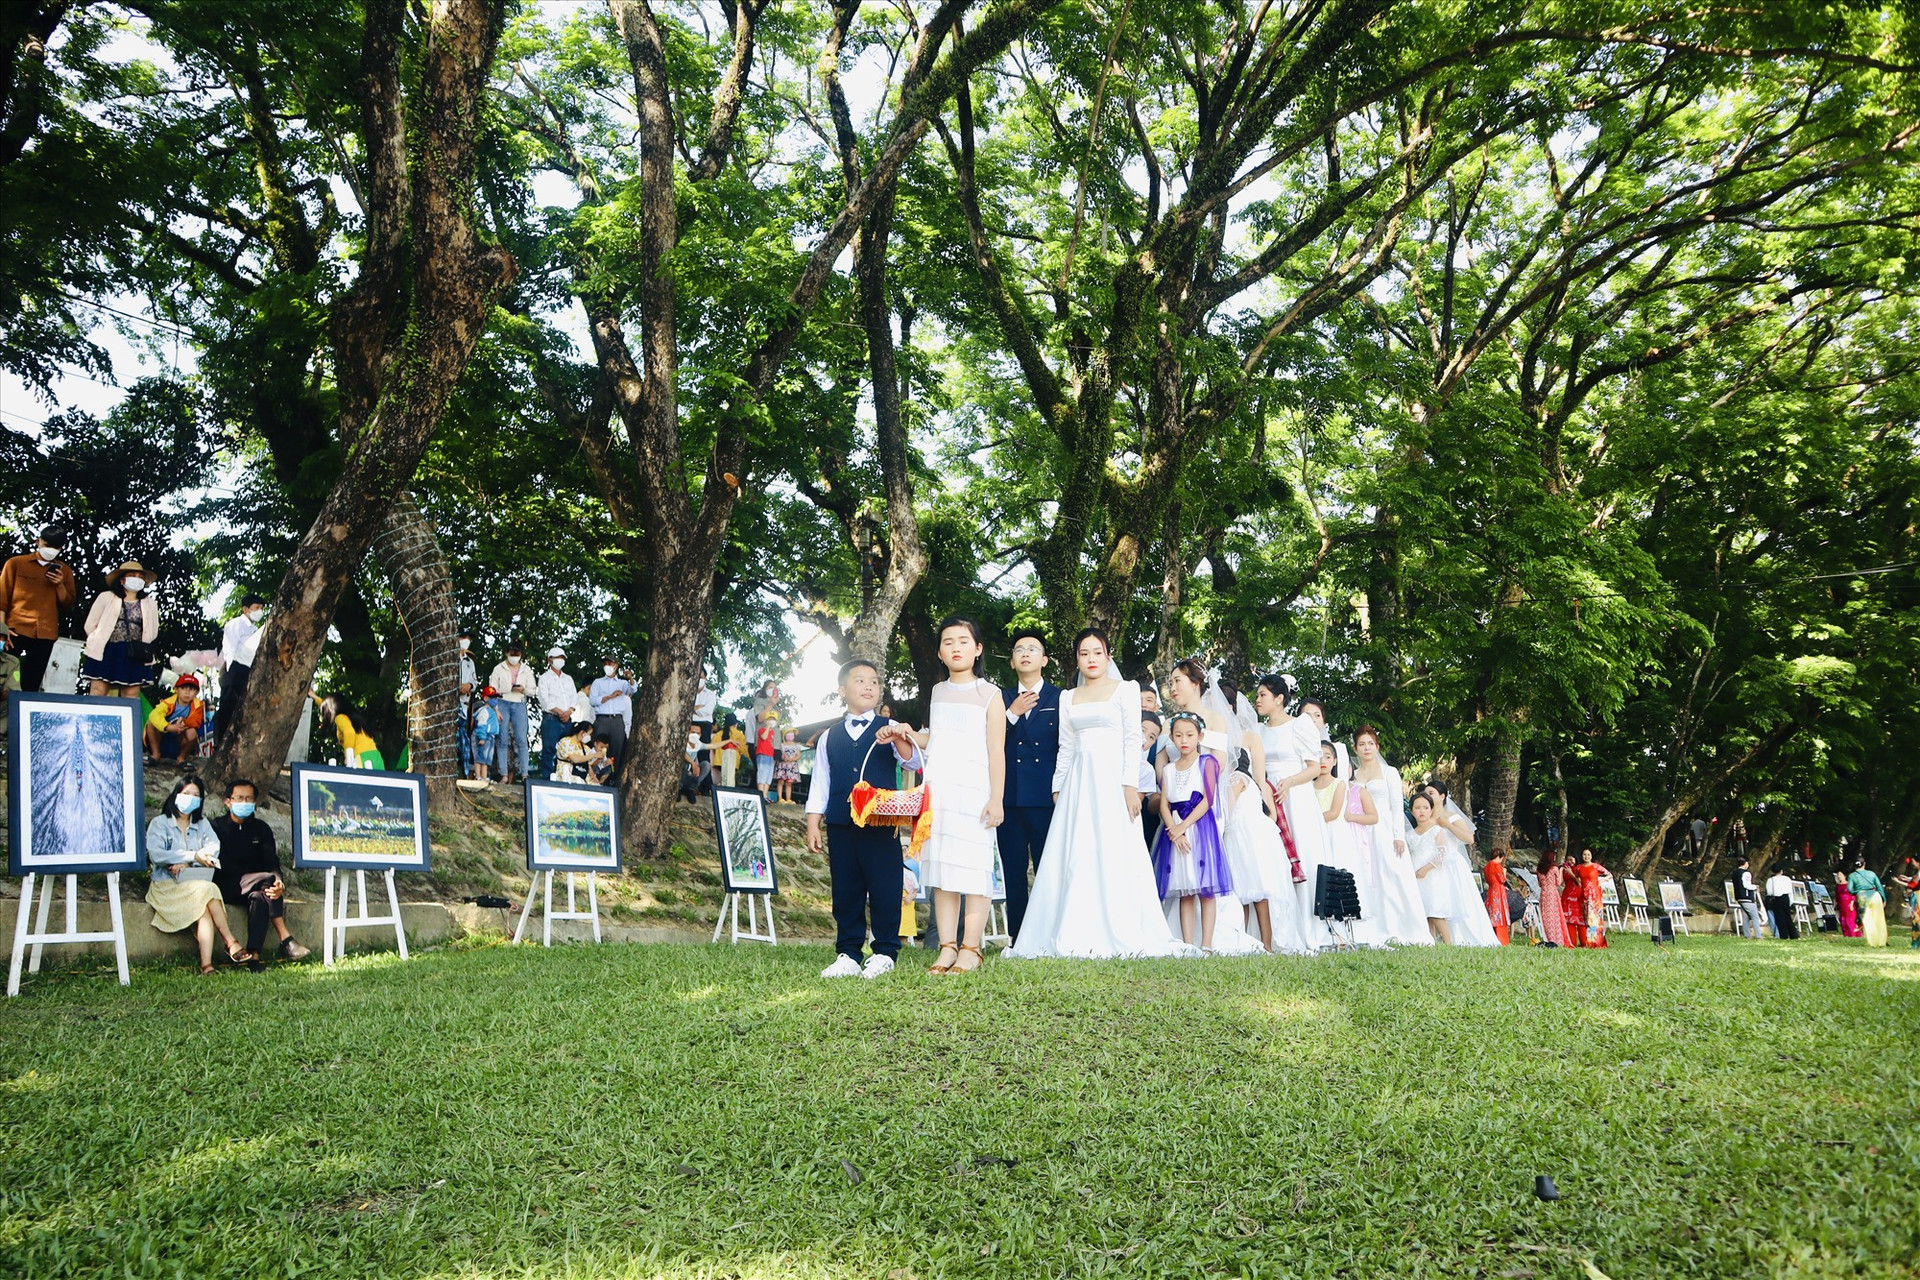 Bảy cặp đôi tham dự chương trình tại Vườn Cừa, làng Hương Trà. Ảnh: Q.T